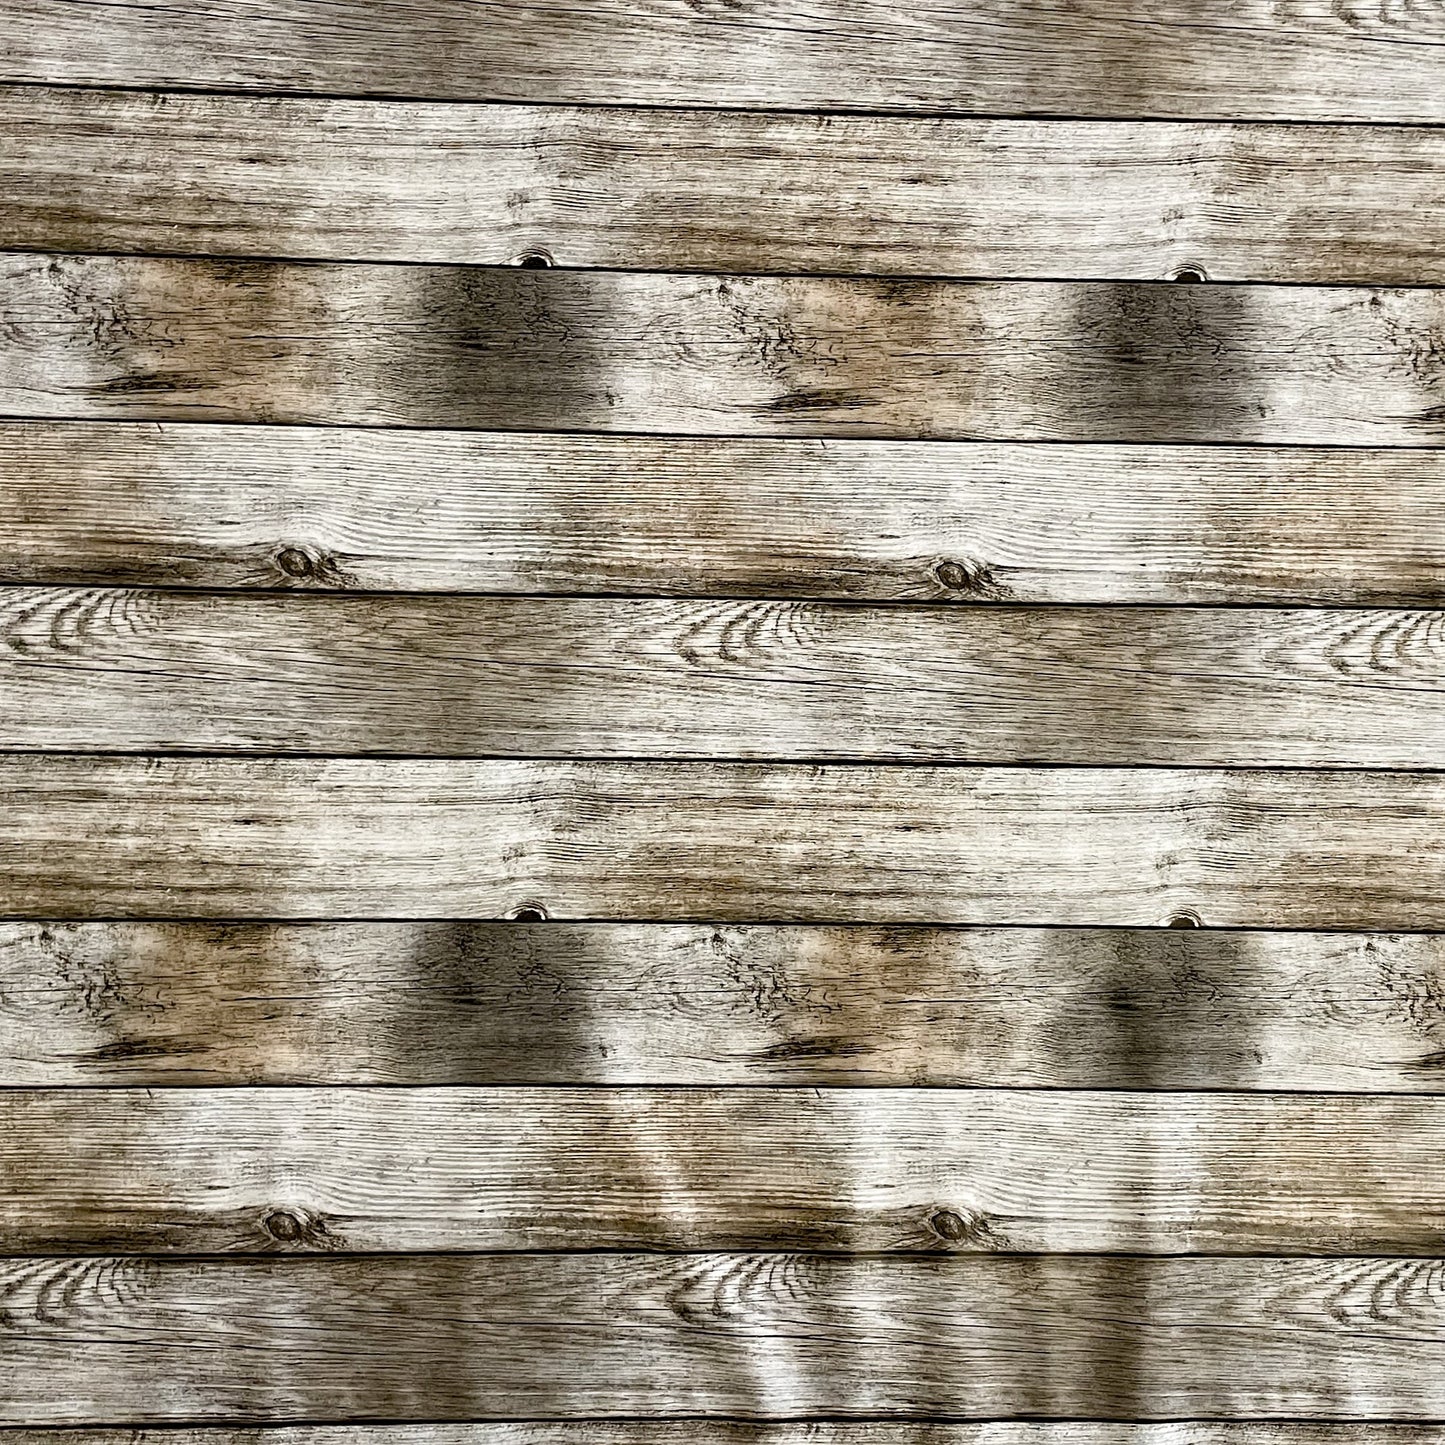 KEVKUS Wachstuch Tischdecke P1000-1 Holz Holzdielen Alm wählbar in eckig, rund und oval -